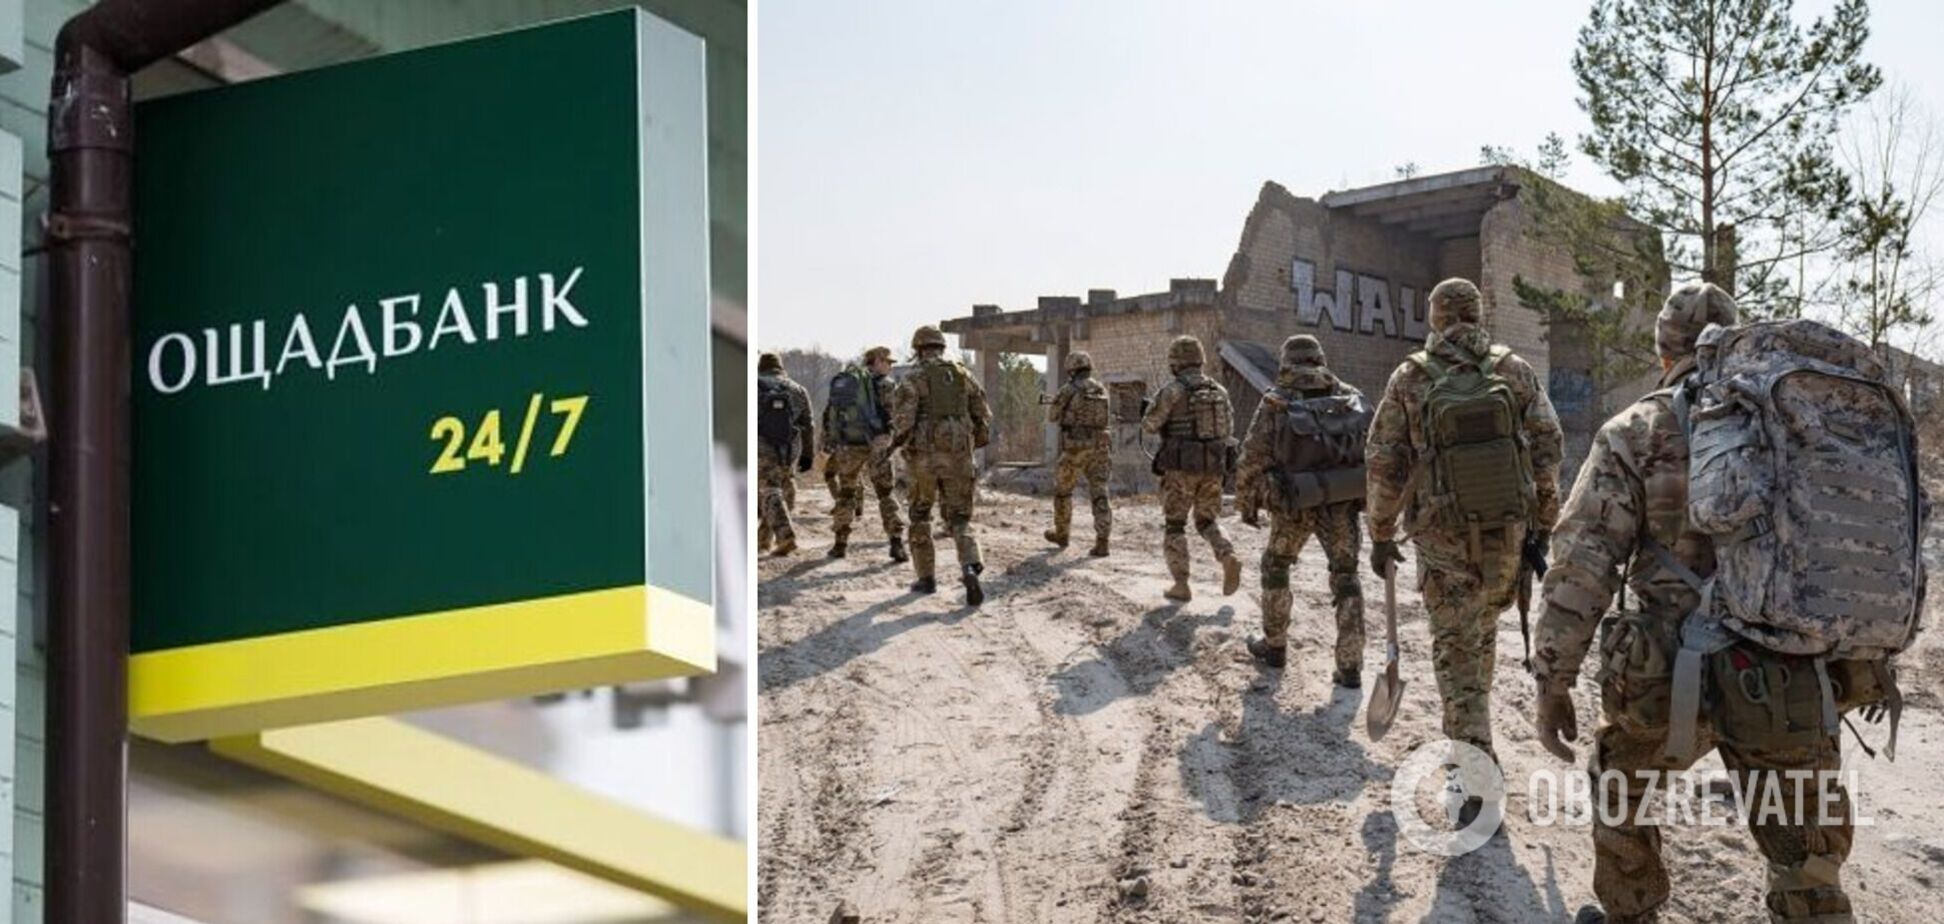 Ощадбанк заявил о поддержке своих сотрудников, которые вступят в ряды резерва территориальной обороны